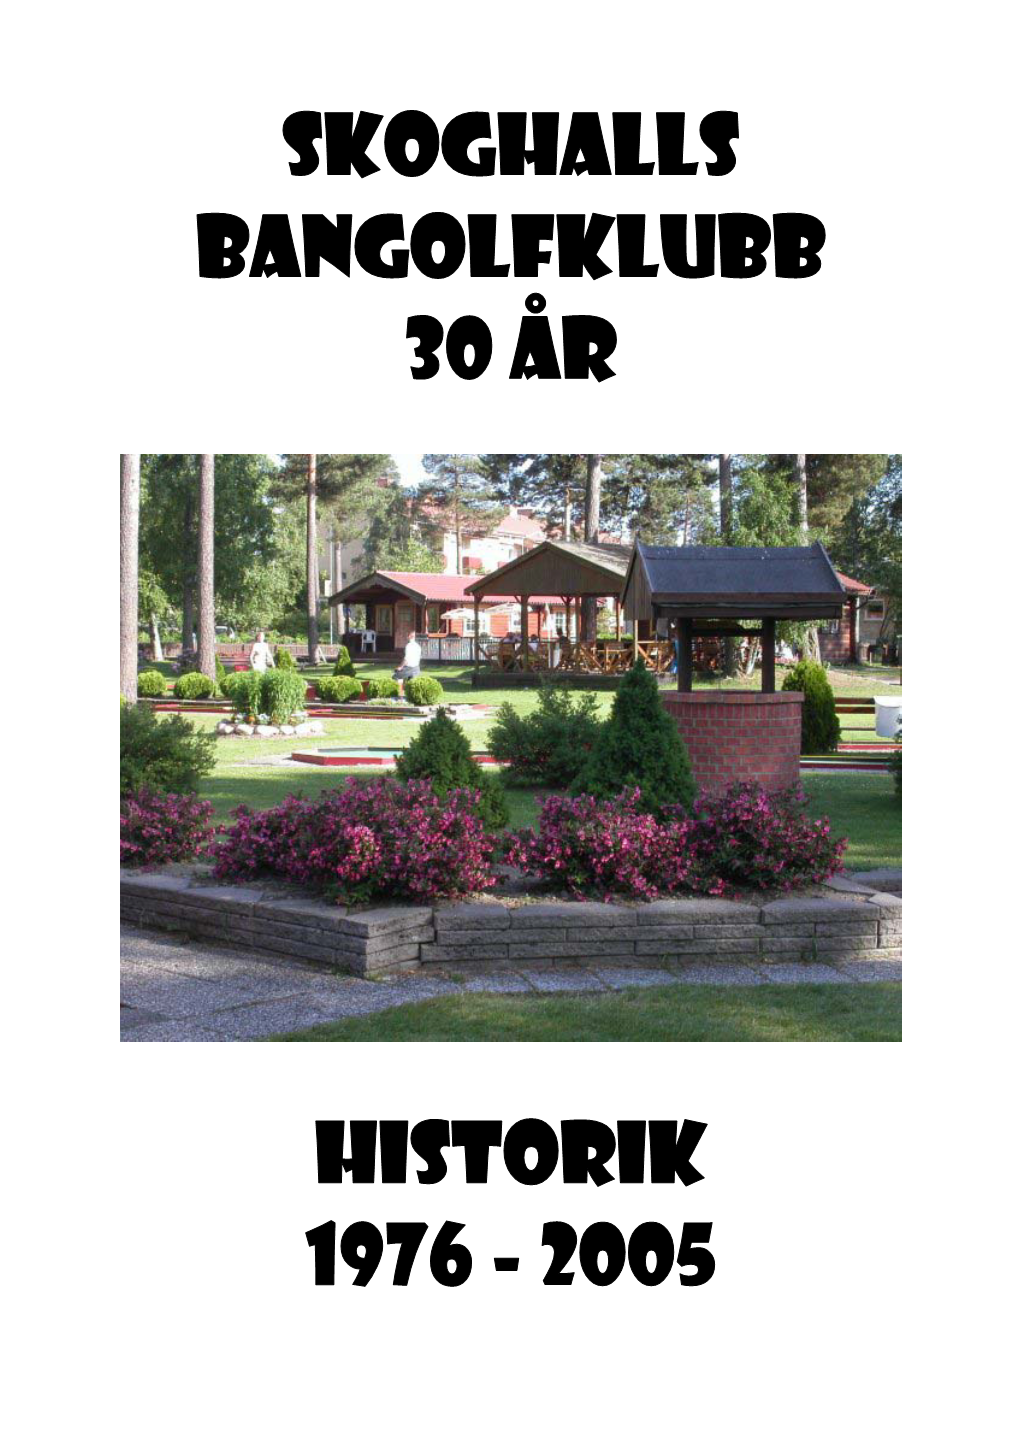 Skoghalls Bangolfklubb 30 ÅR Historik 1976